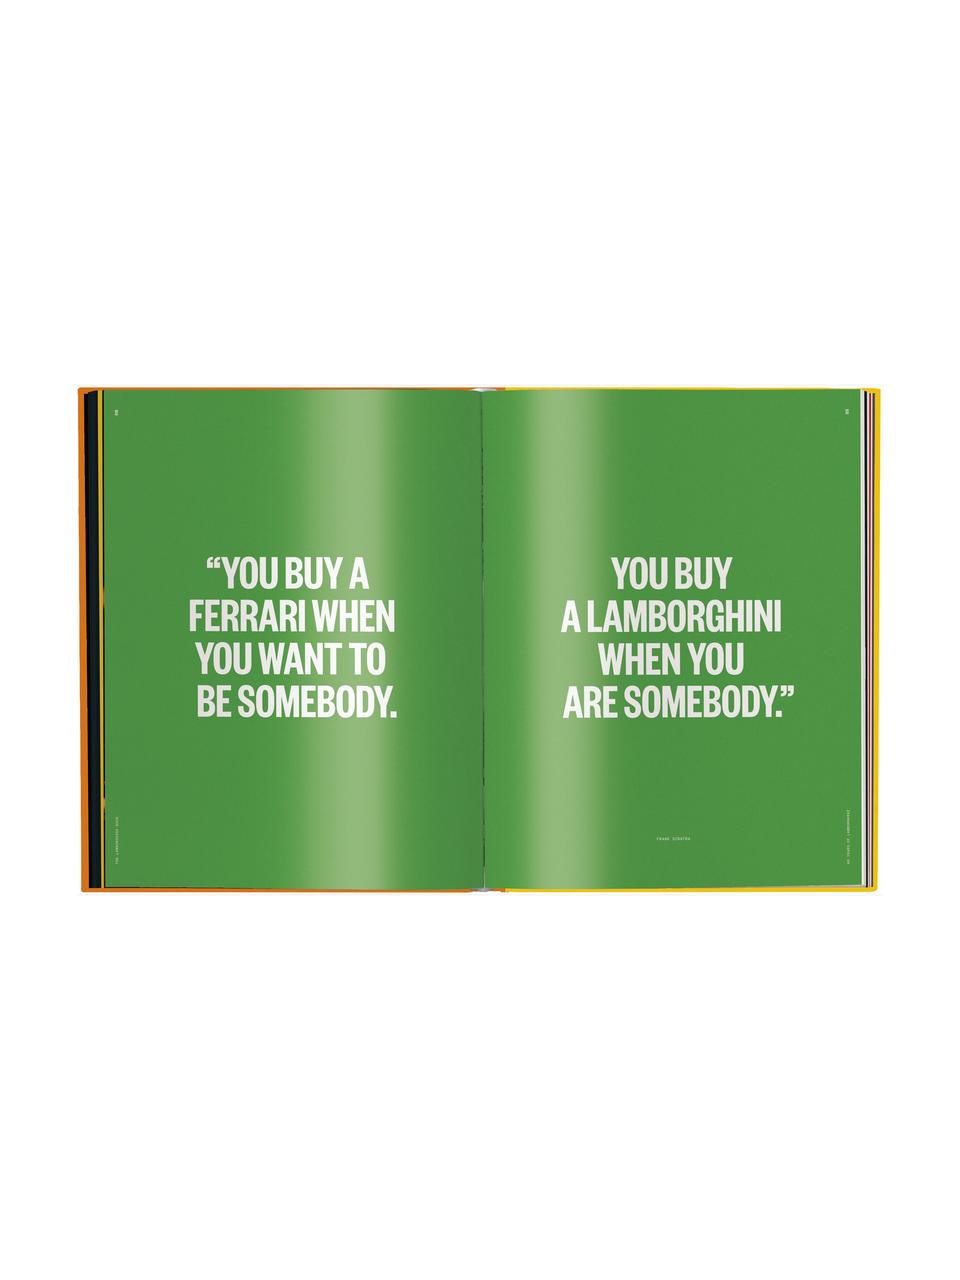 Libro ilustrado The Lamborghini Book, Papel, The Lamborghini Book, An 30 x Al 38 cm